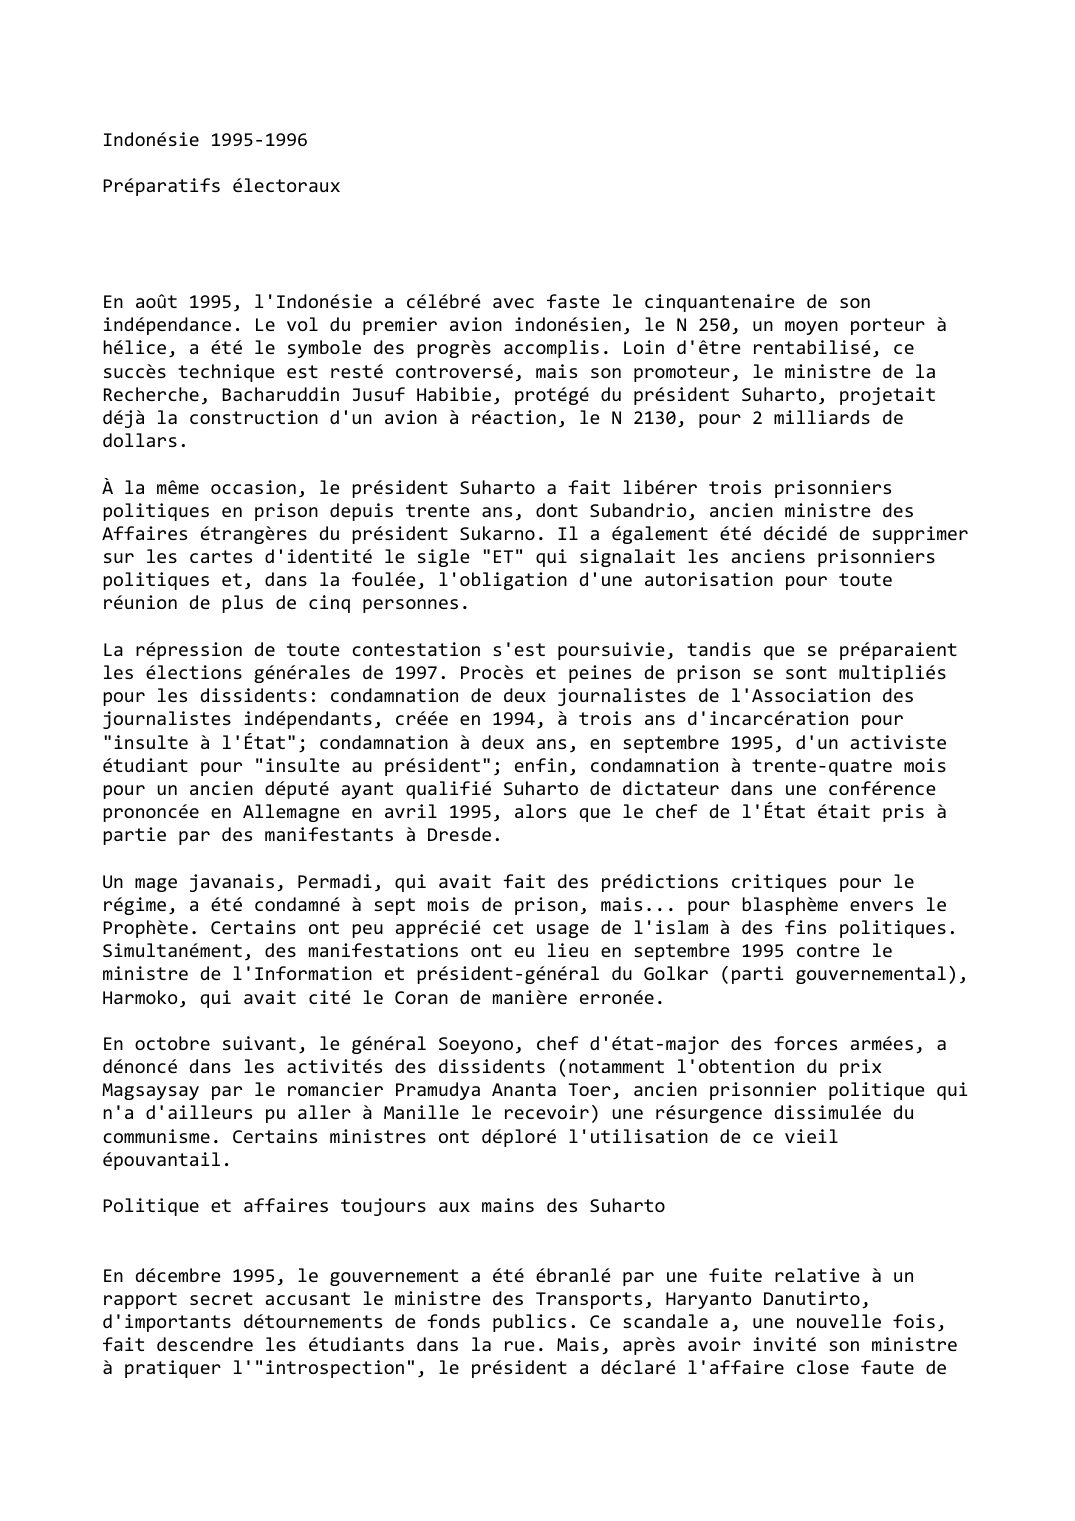 Prévisualisation du document Indonésie 1995-1996

Préparatifs électoraux